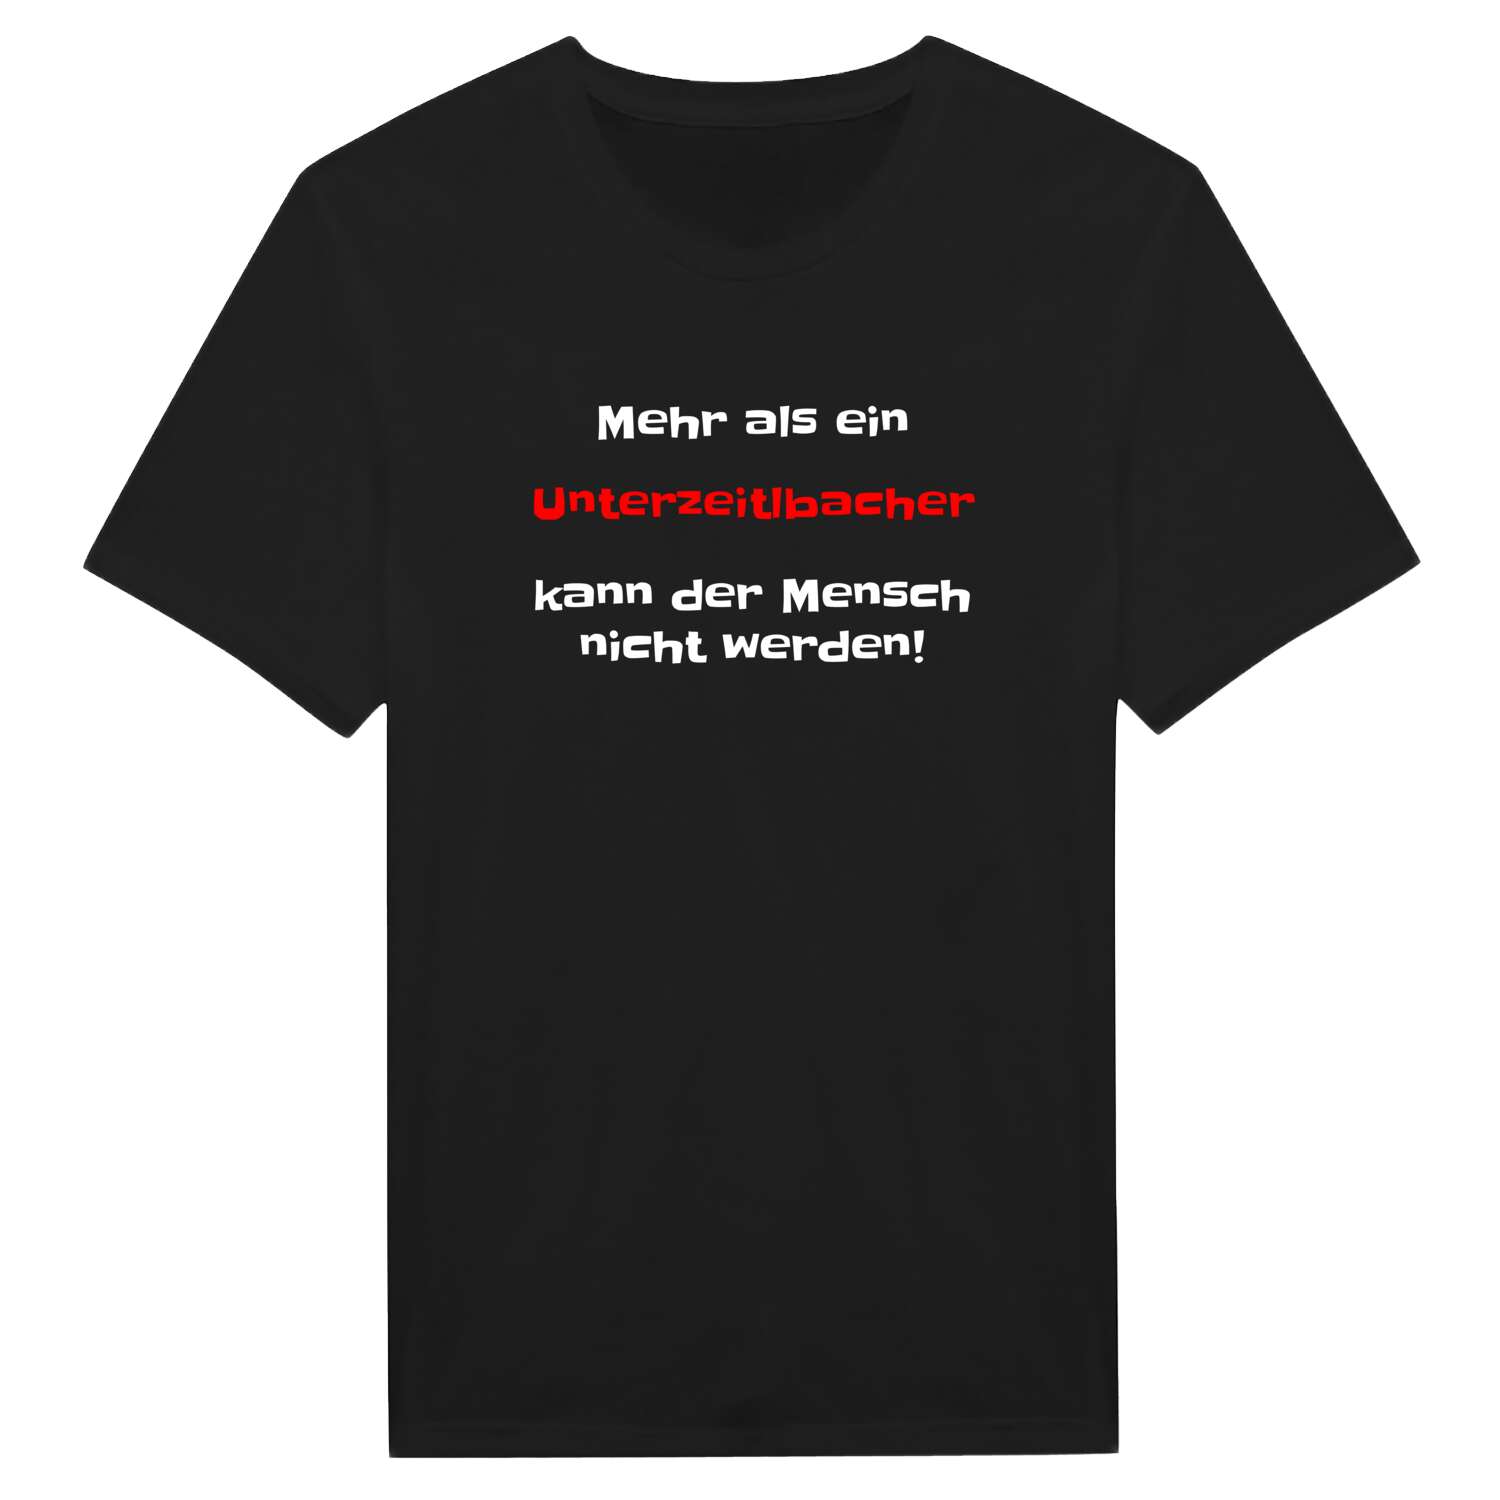 Unterzeitlbach T-Shirt »Mehr als ein«